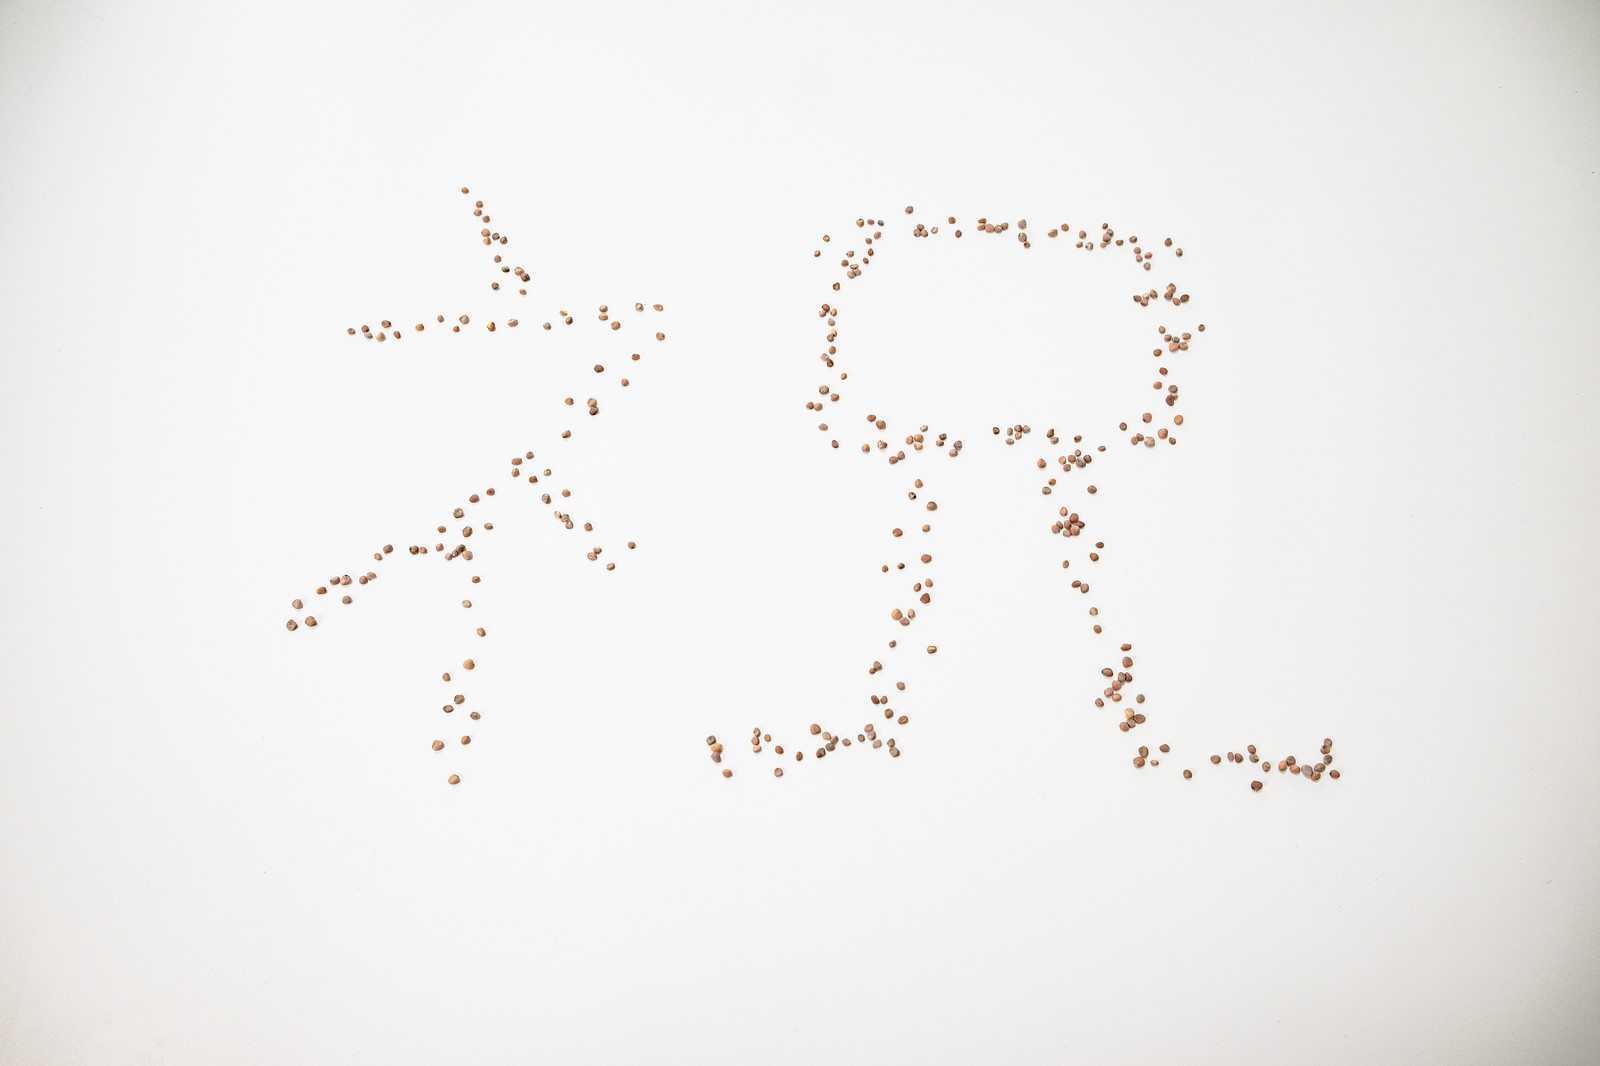 「小さい種で作った「祝」の文字 | フリー素材のぱくたそ」の写真